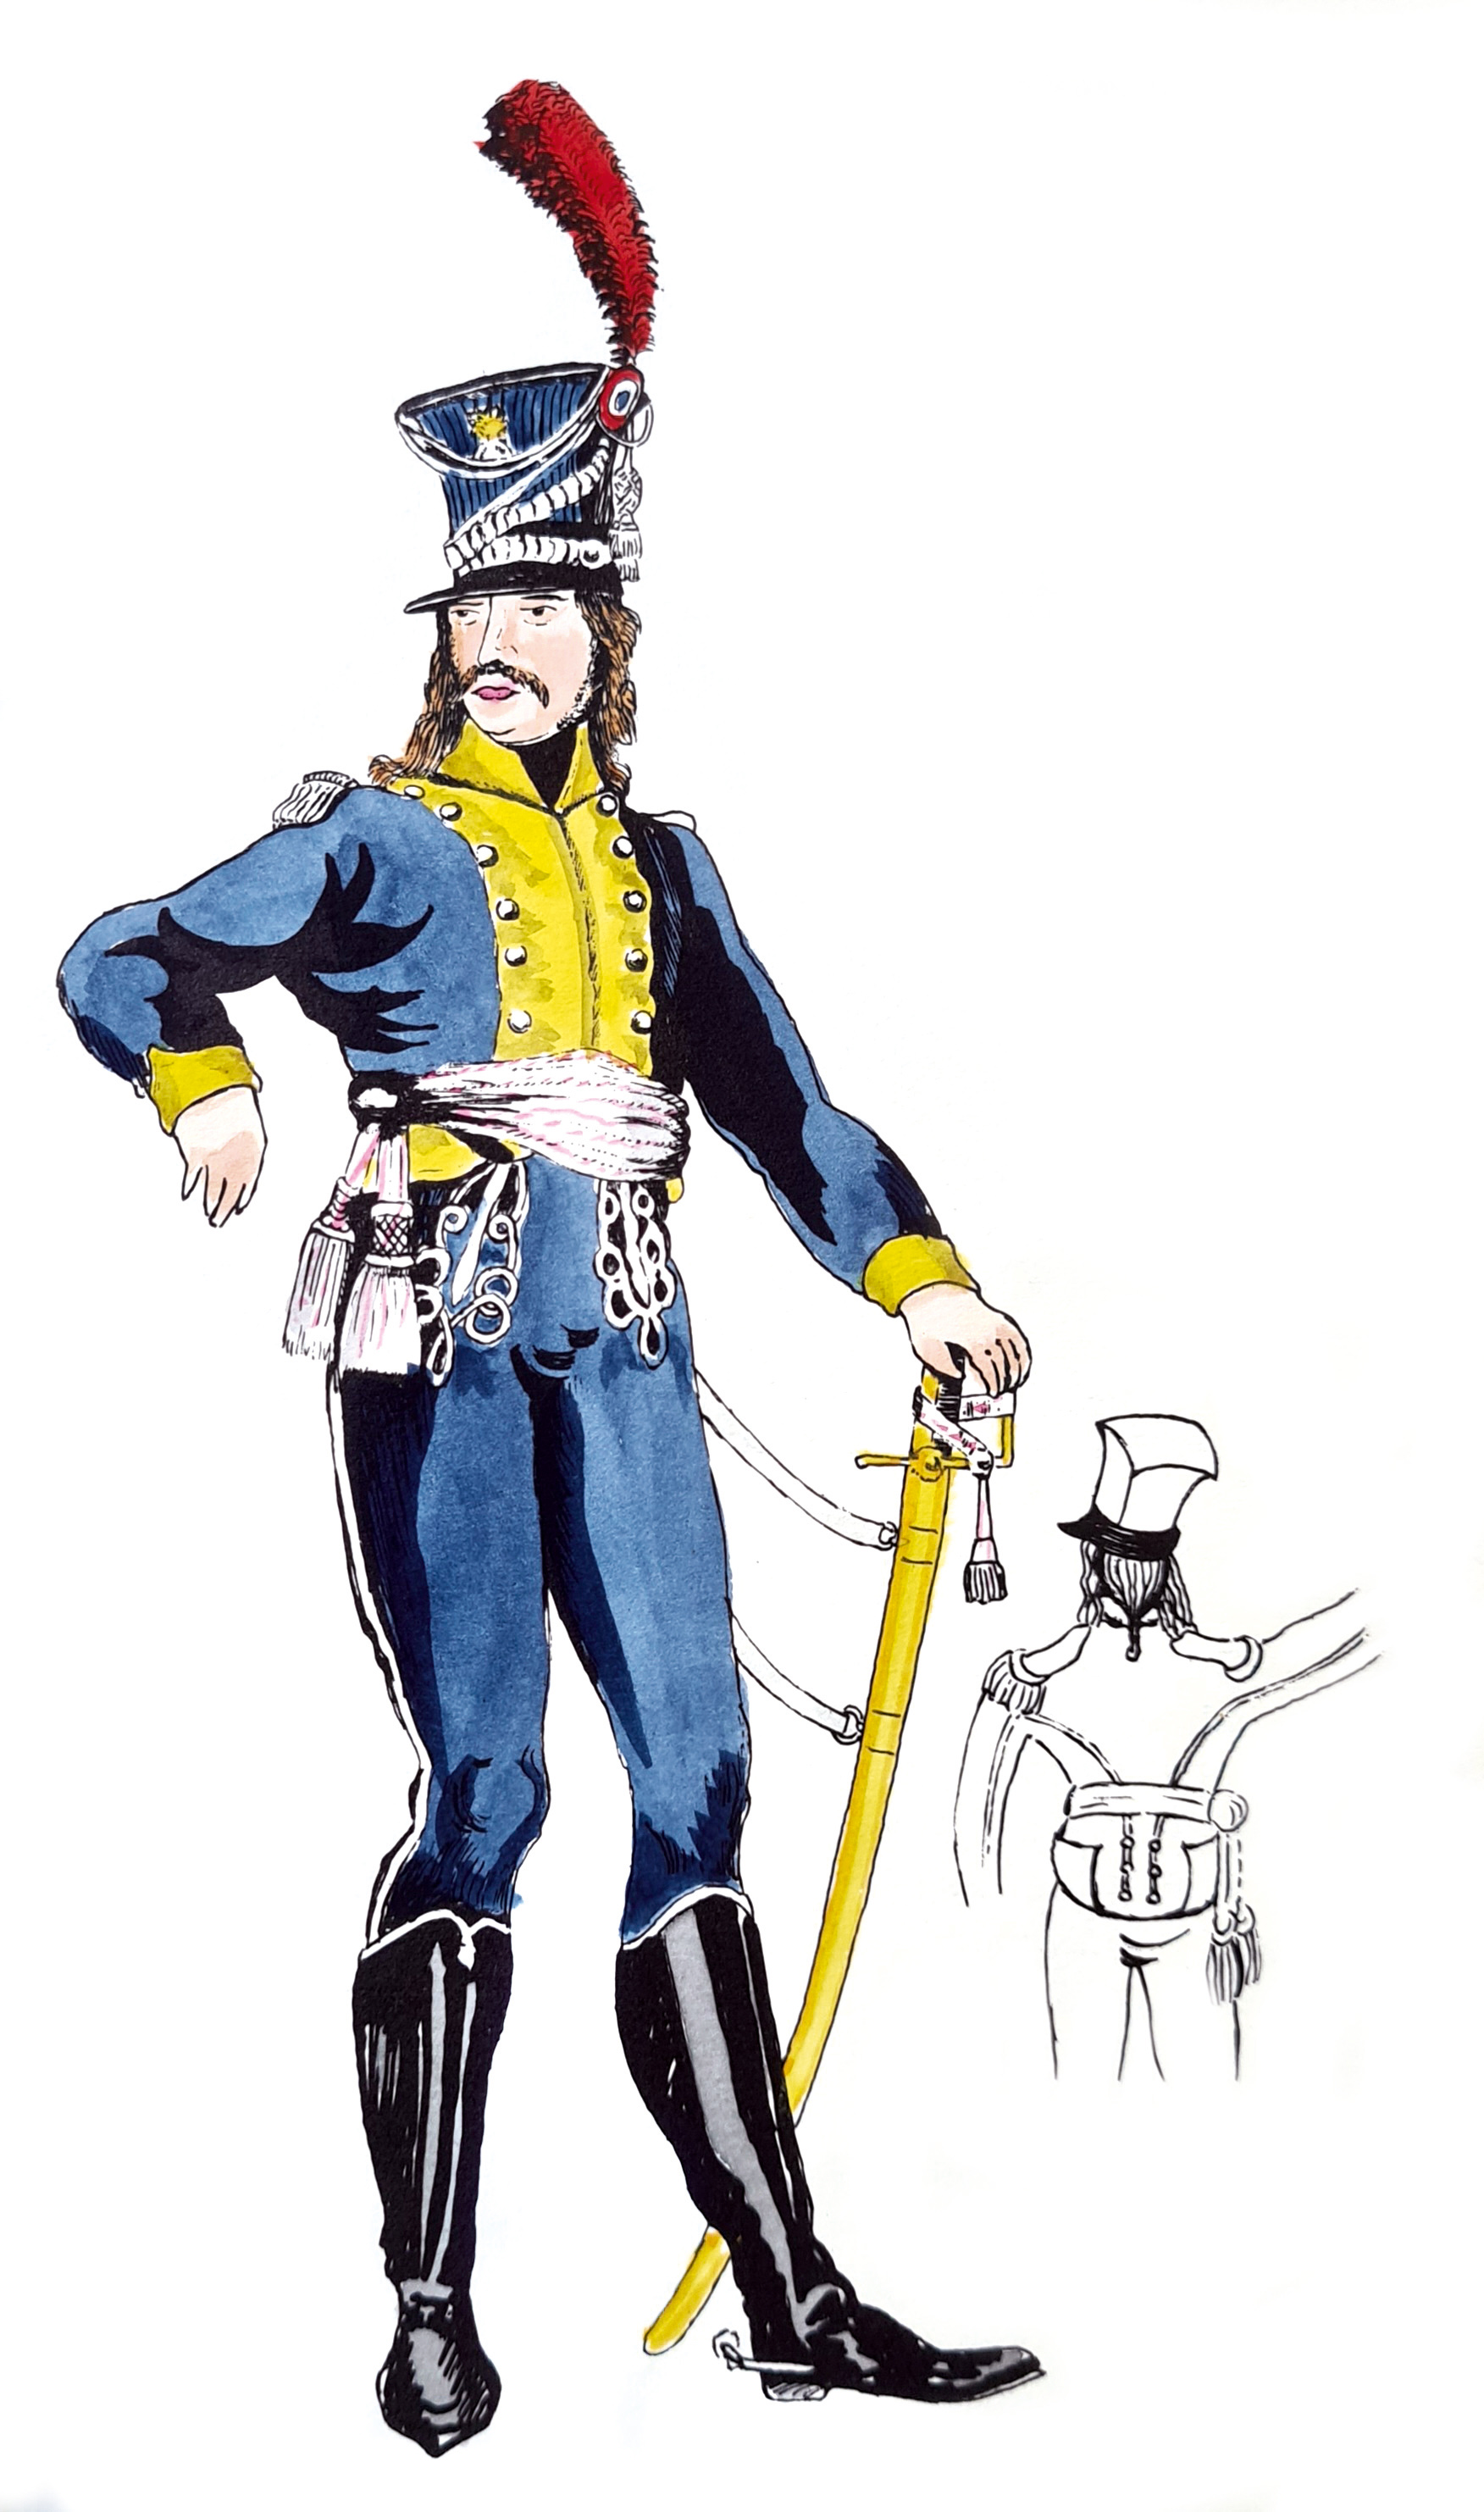 Oficer kompanii grenadierskiej (o czym świadczy gorejący granat na rogatywce) ze 114. półbrygady, mal. C. Hamilton Smith. Fot. Victoria and Albert Museum w Londynie